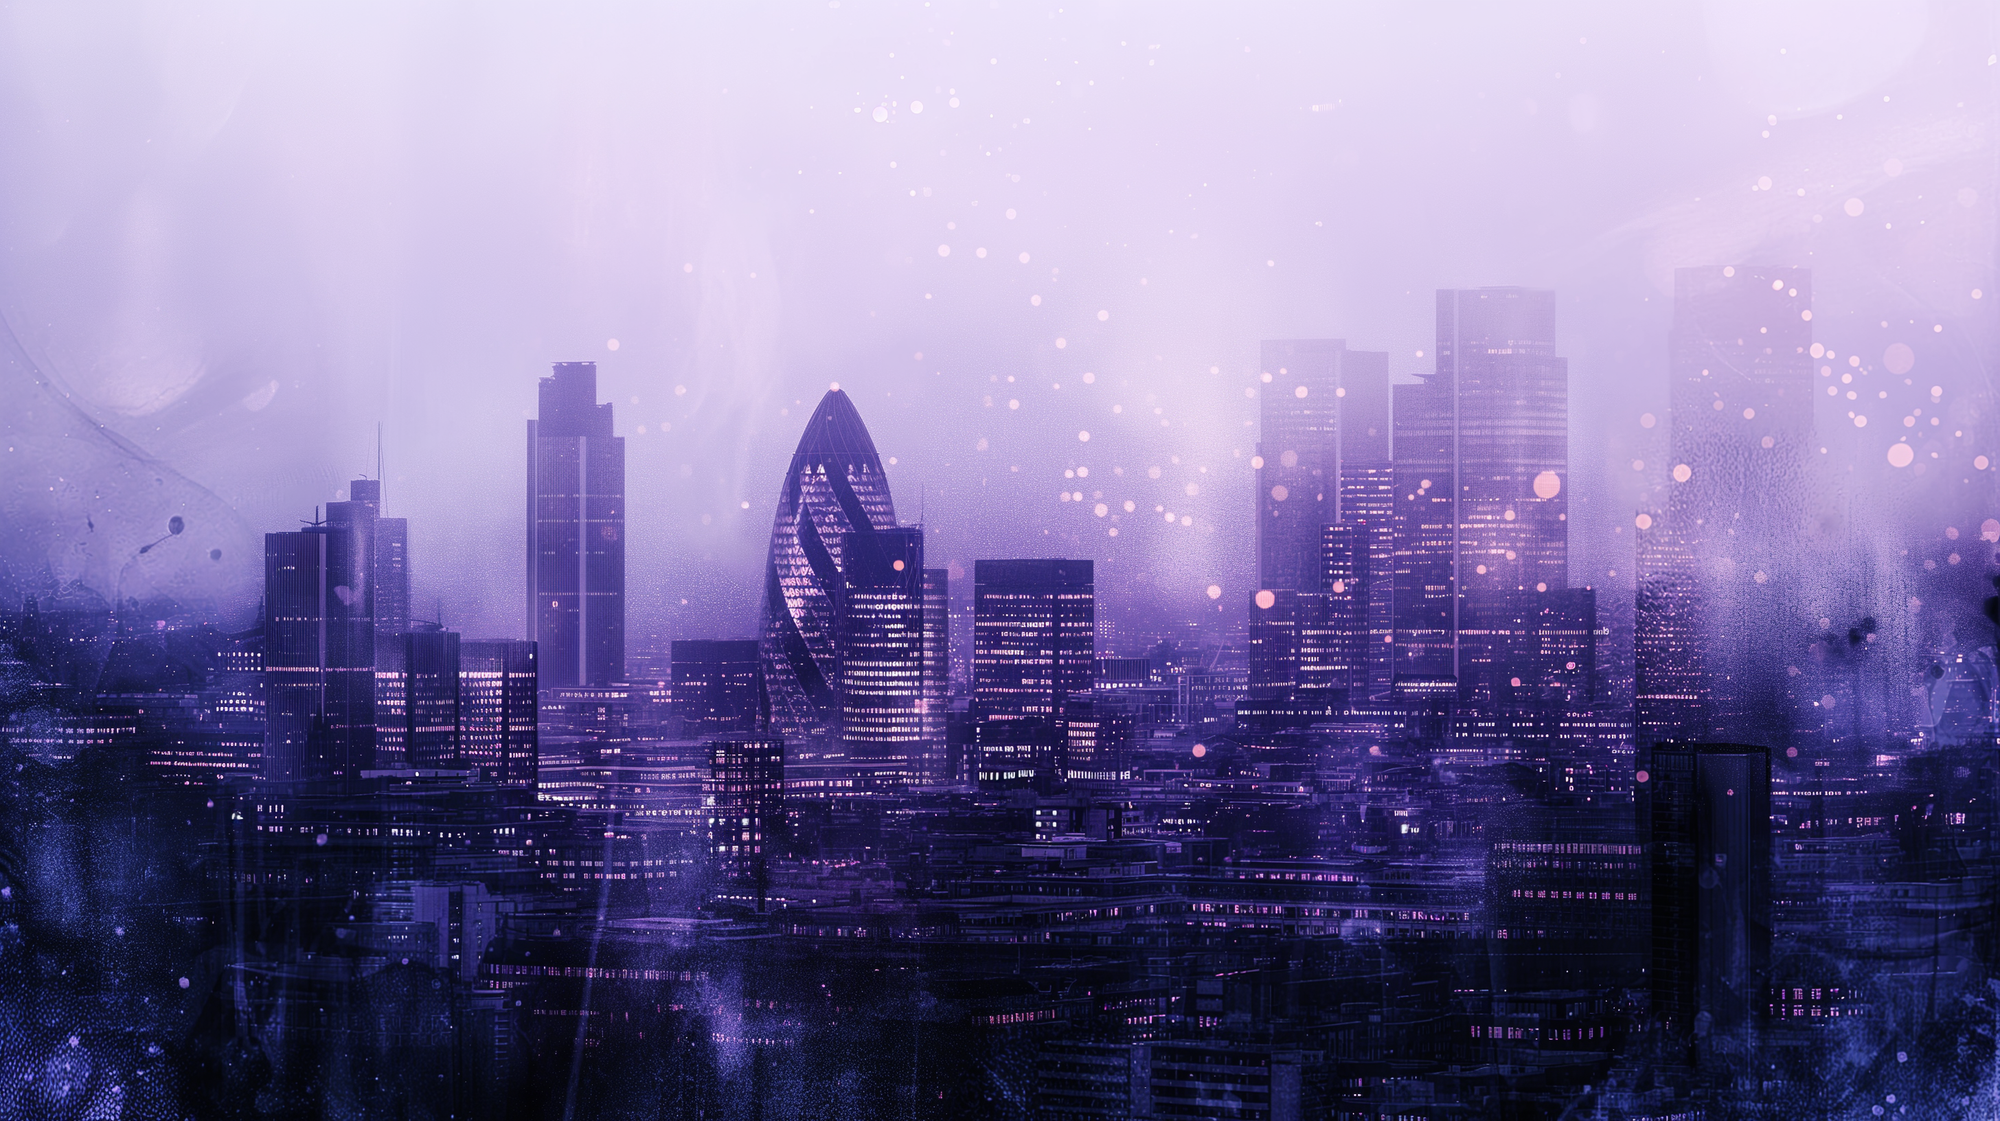 a cityscape of london in a futuristic artistic imagination